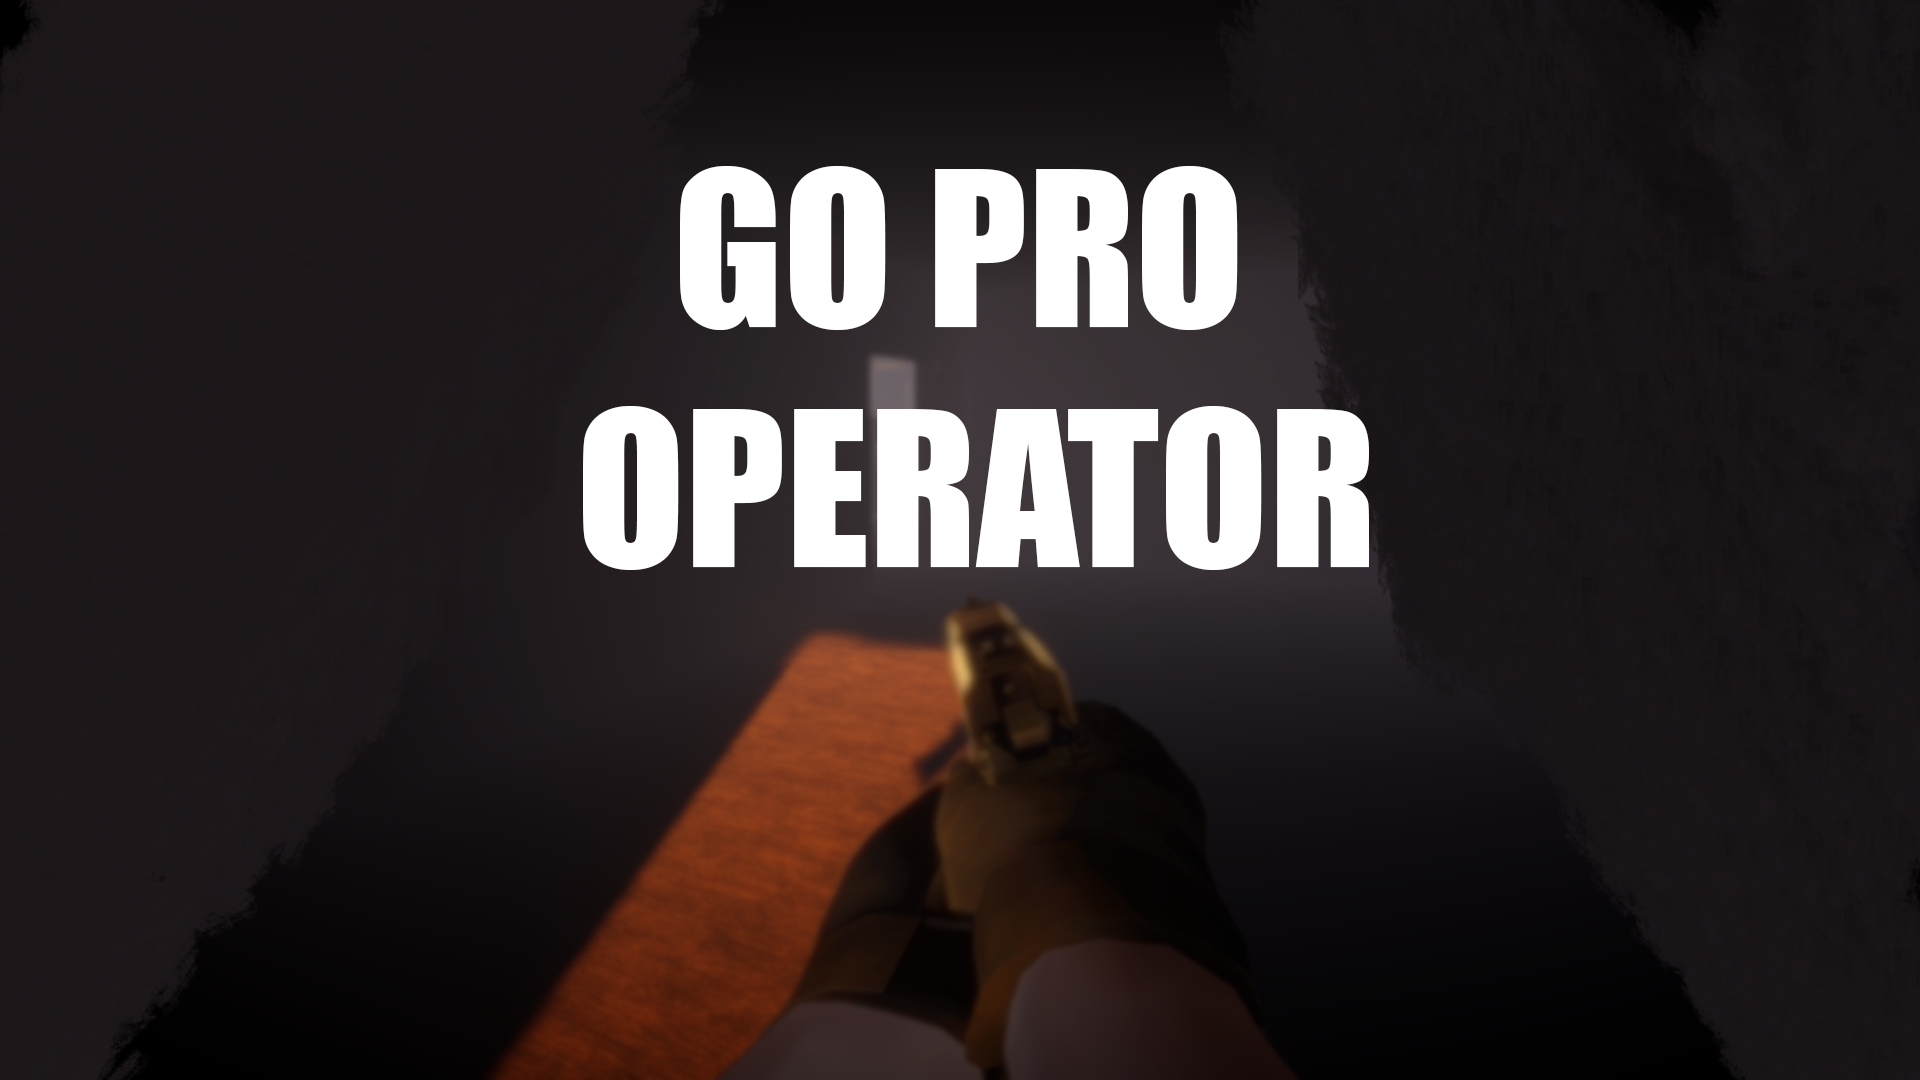 Go Pro Operator Prototype